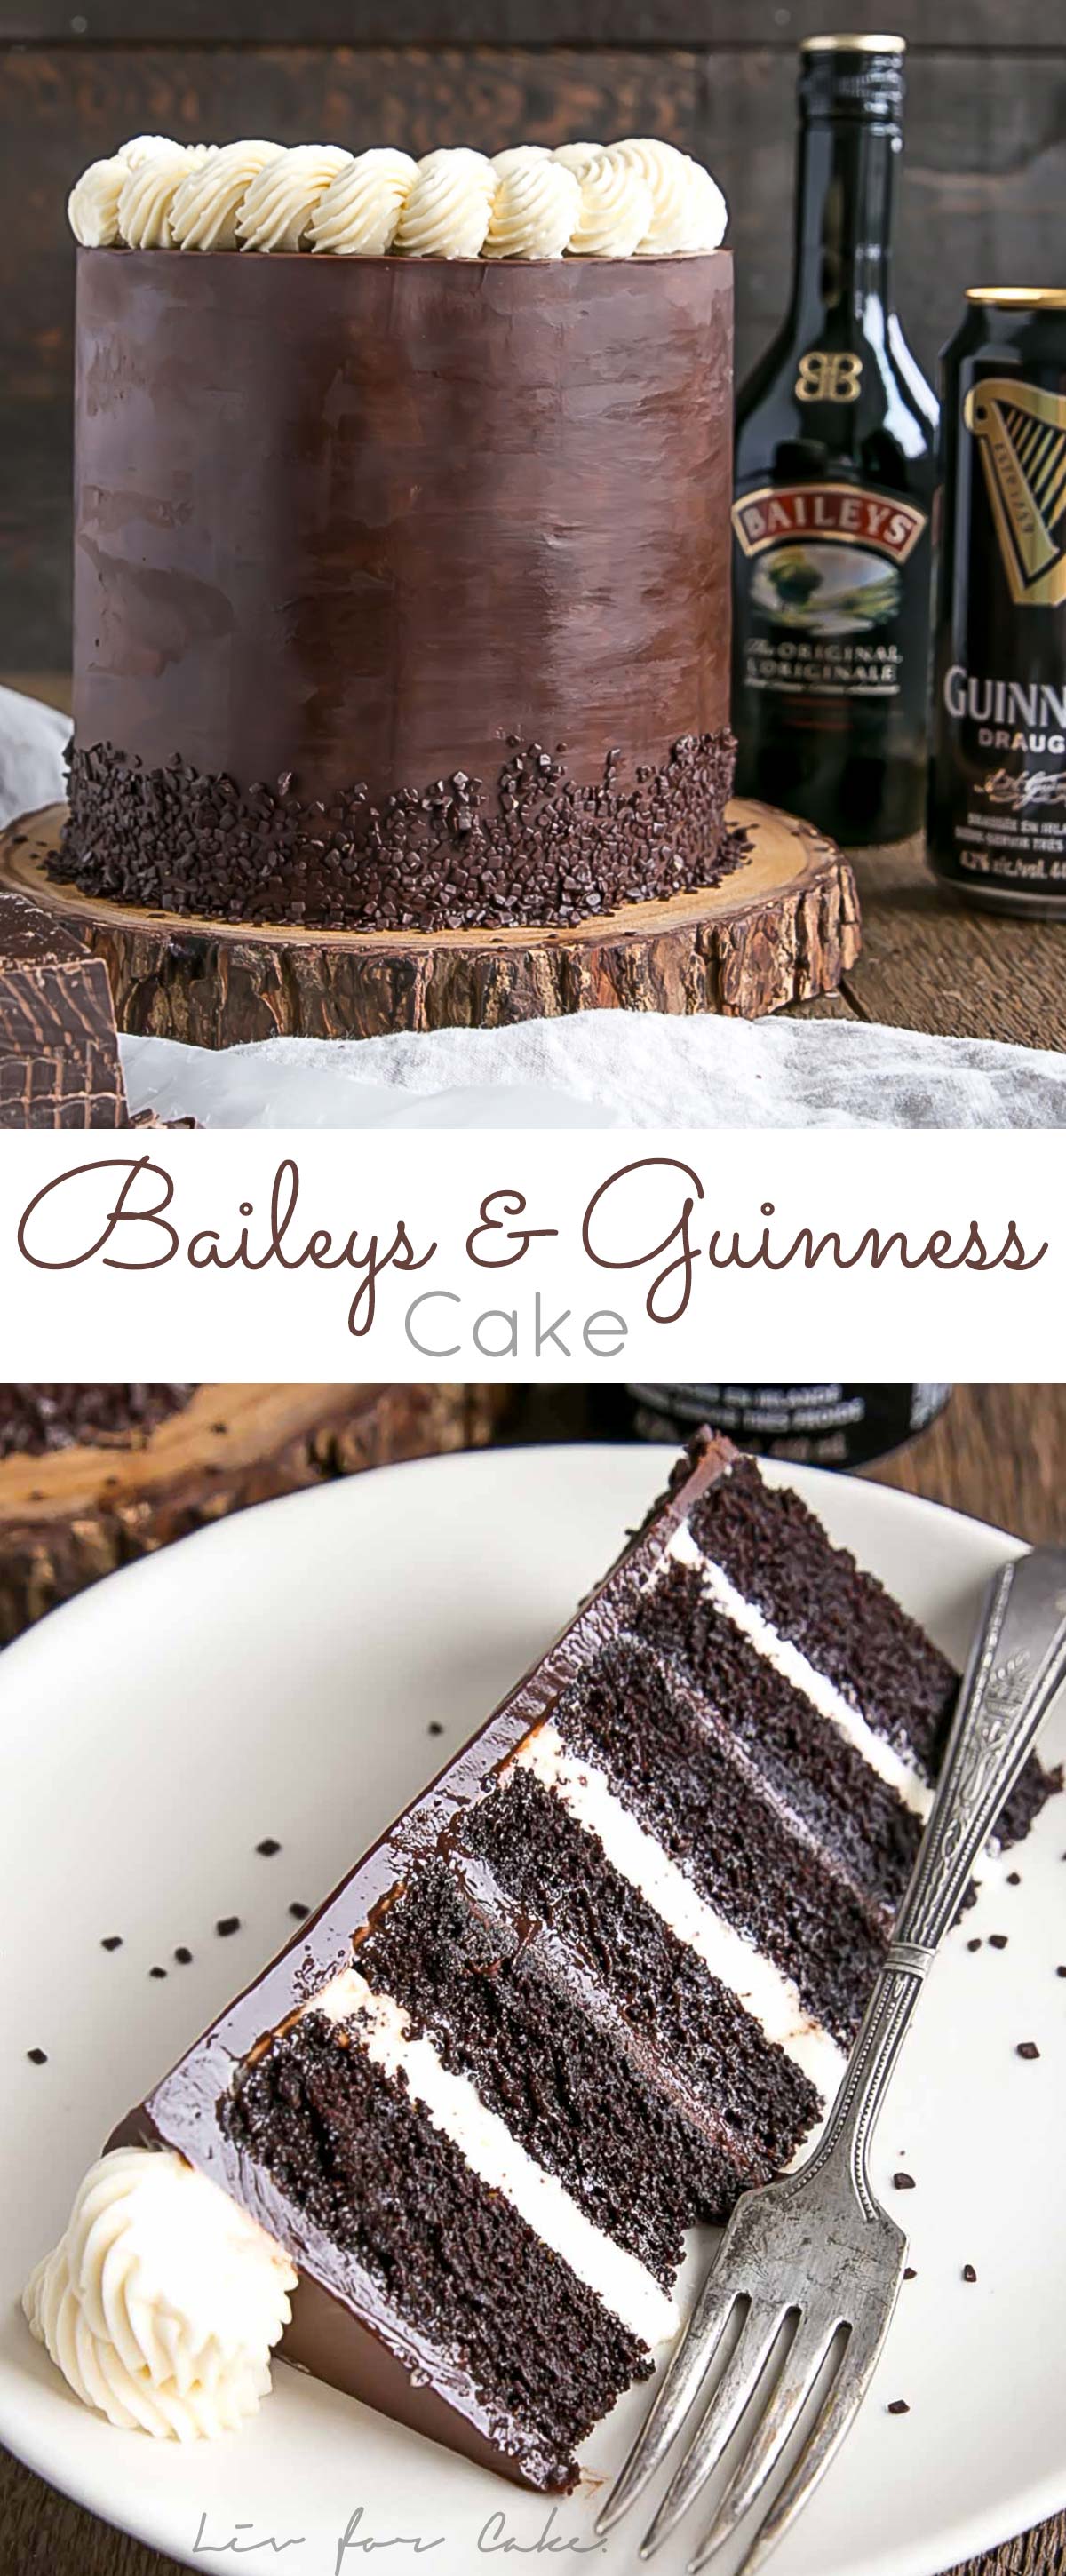 Baileys & Guinness Cake